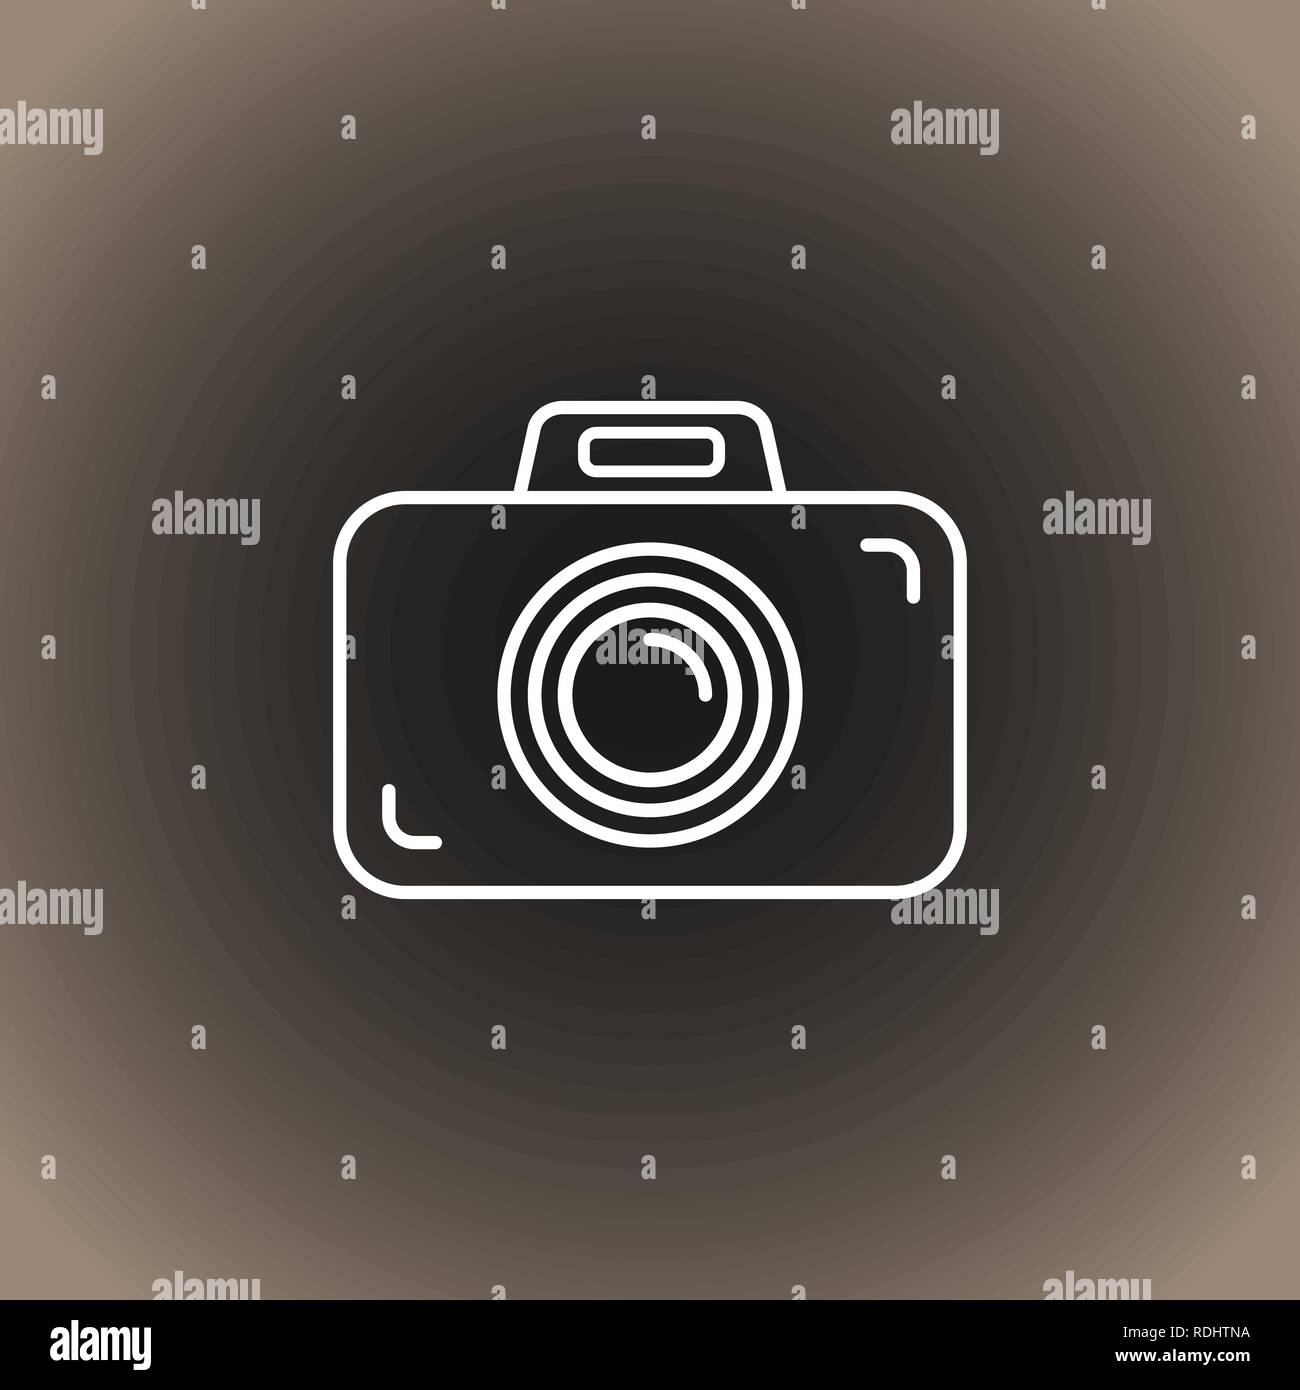 Icono de la cámara fotográfica de esquema en negro/gris oscuro y beige de fondo degradado. Ilustración vectorial EPS10. Ilustración del Vector